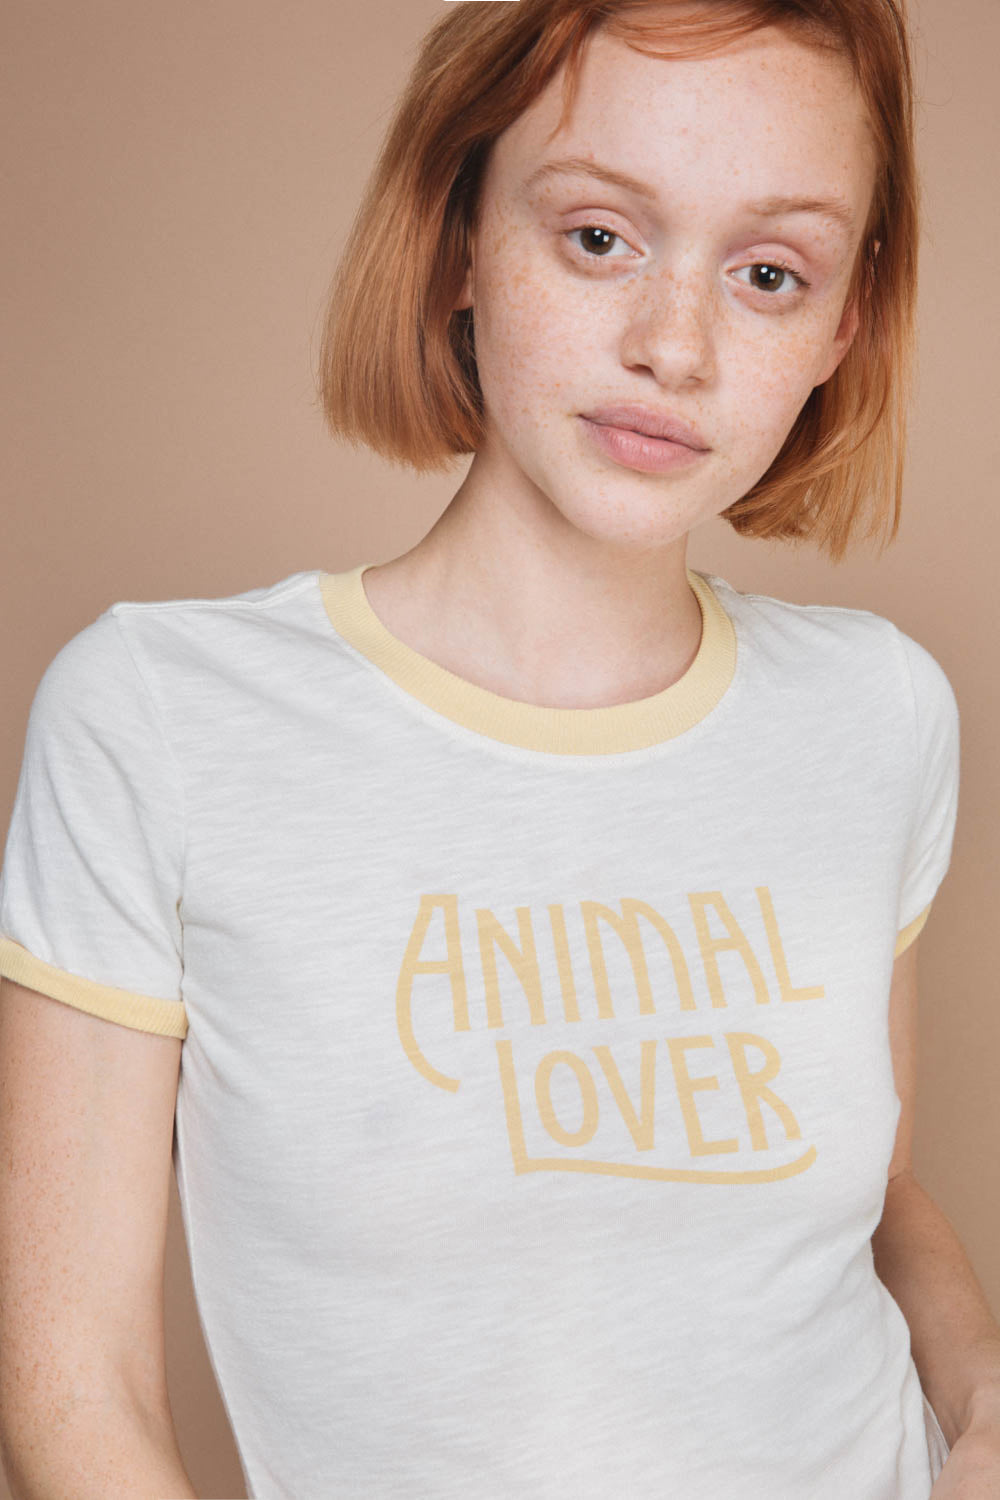 Animal Lover Shirt - Women's Ringer T-Shirt | The Bee & The Fox